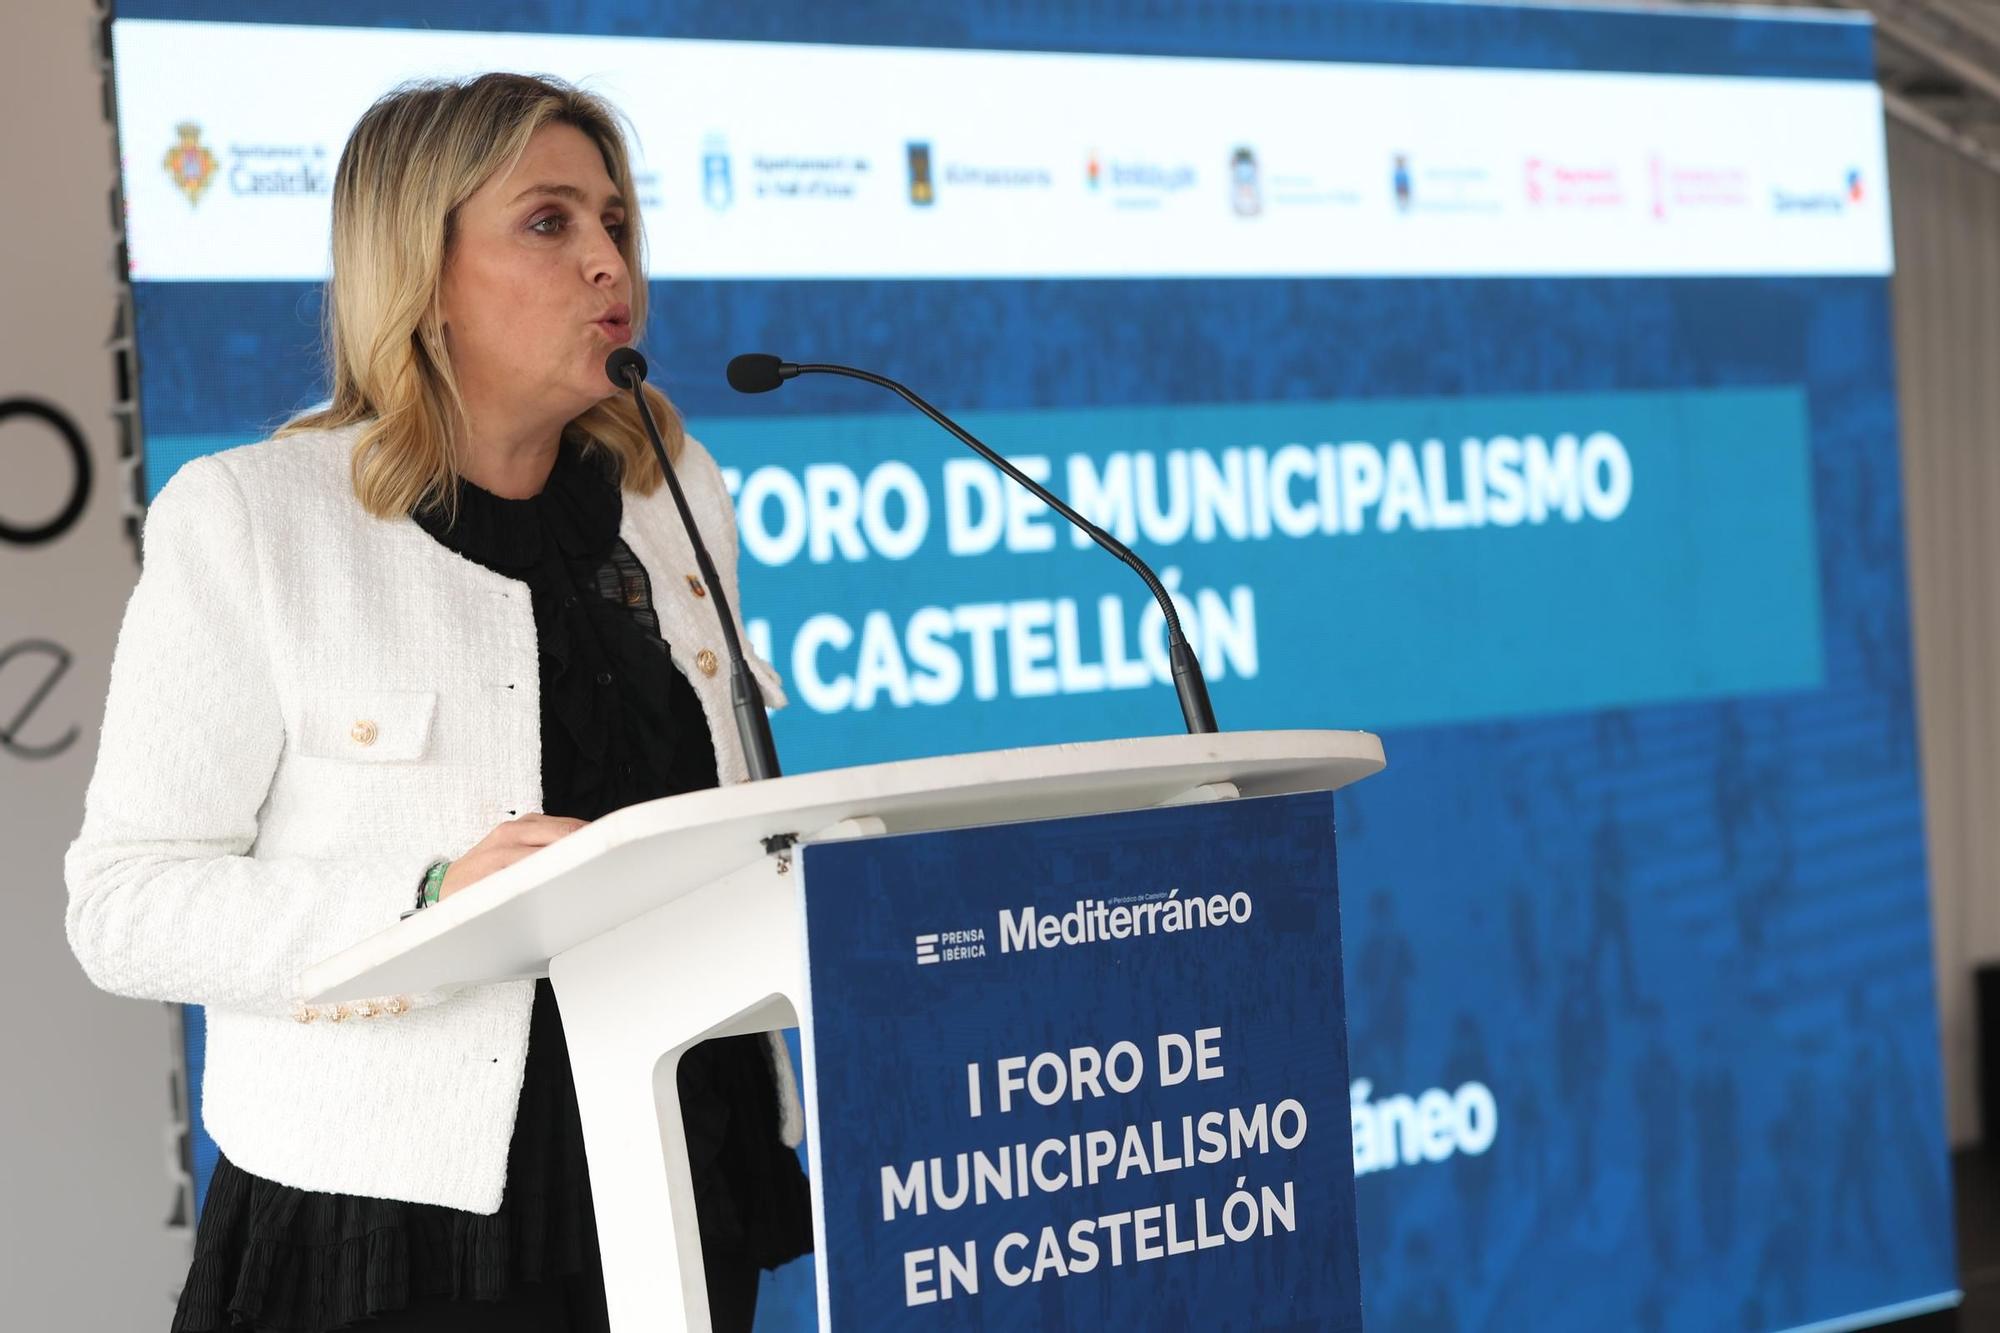 I Foro de Municipalismo en Castellón organizado por Mediterráneo